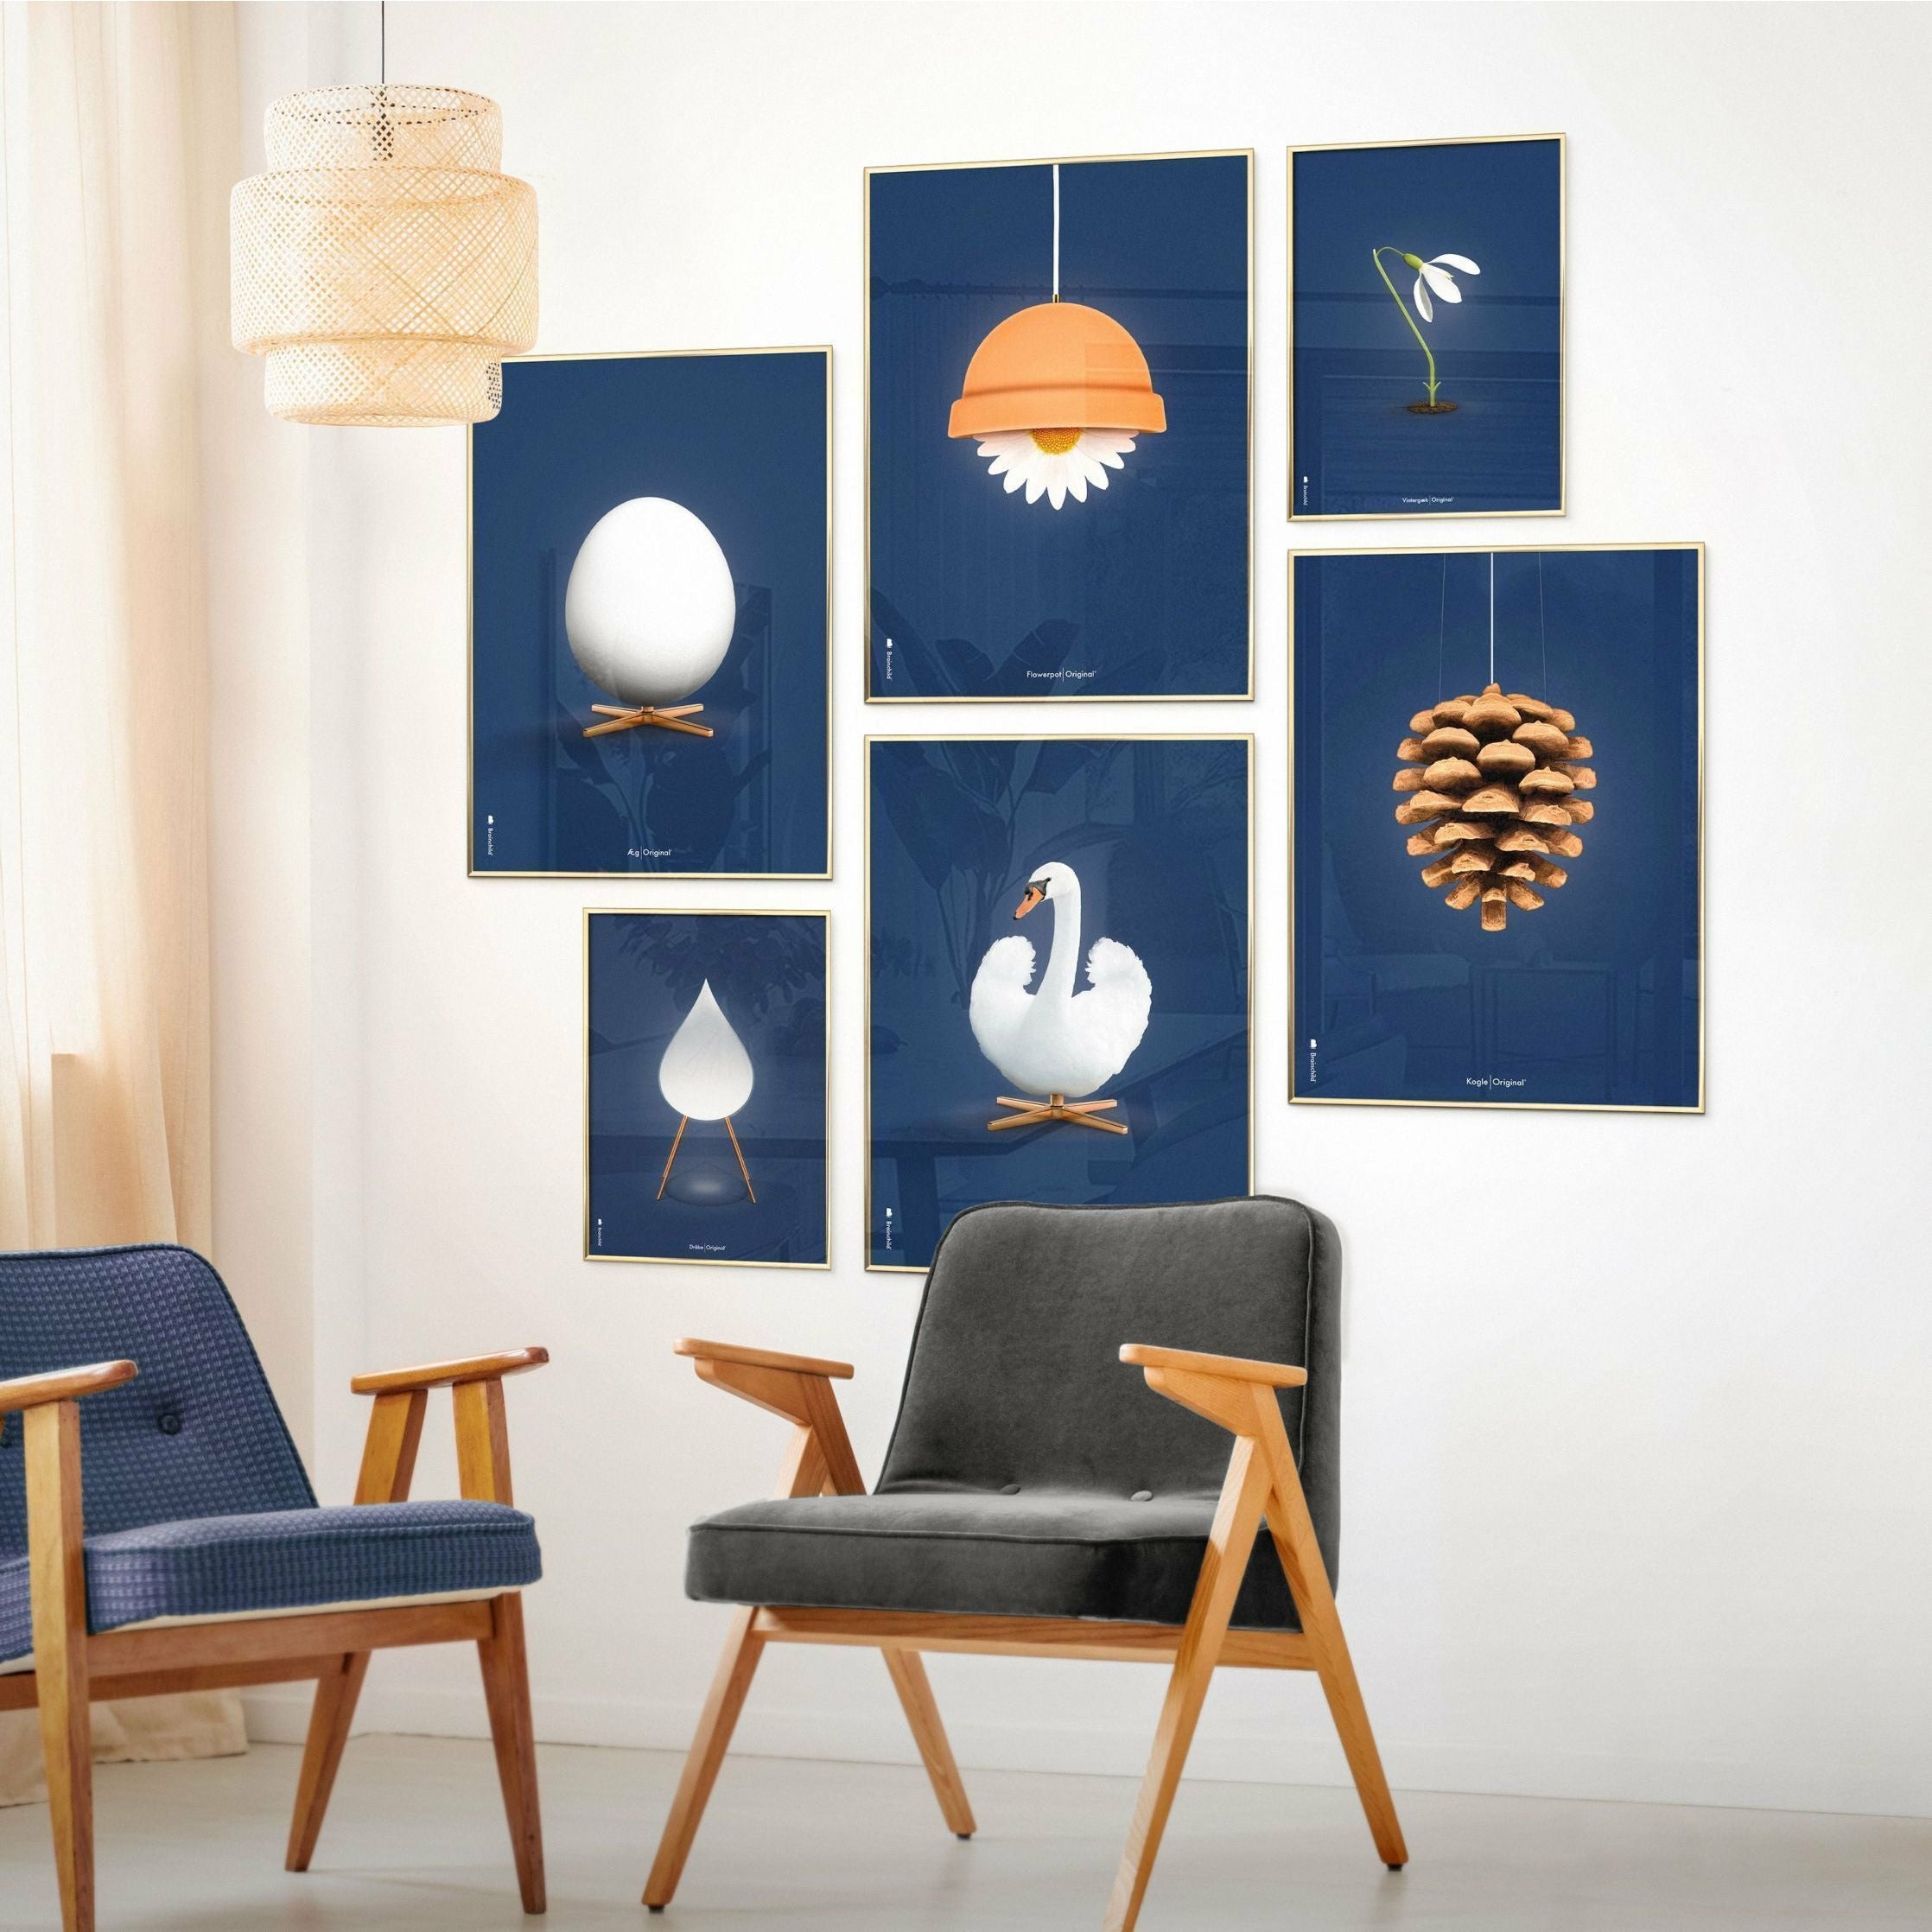 Pomysły Swan Classic Plakat bez ramki 70 x100 cm, ciemnoniebieskie tło